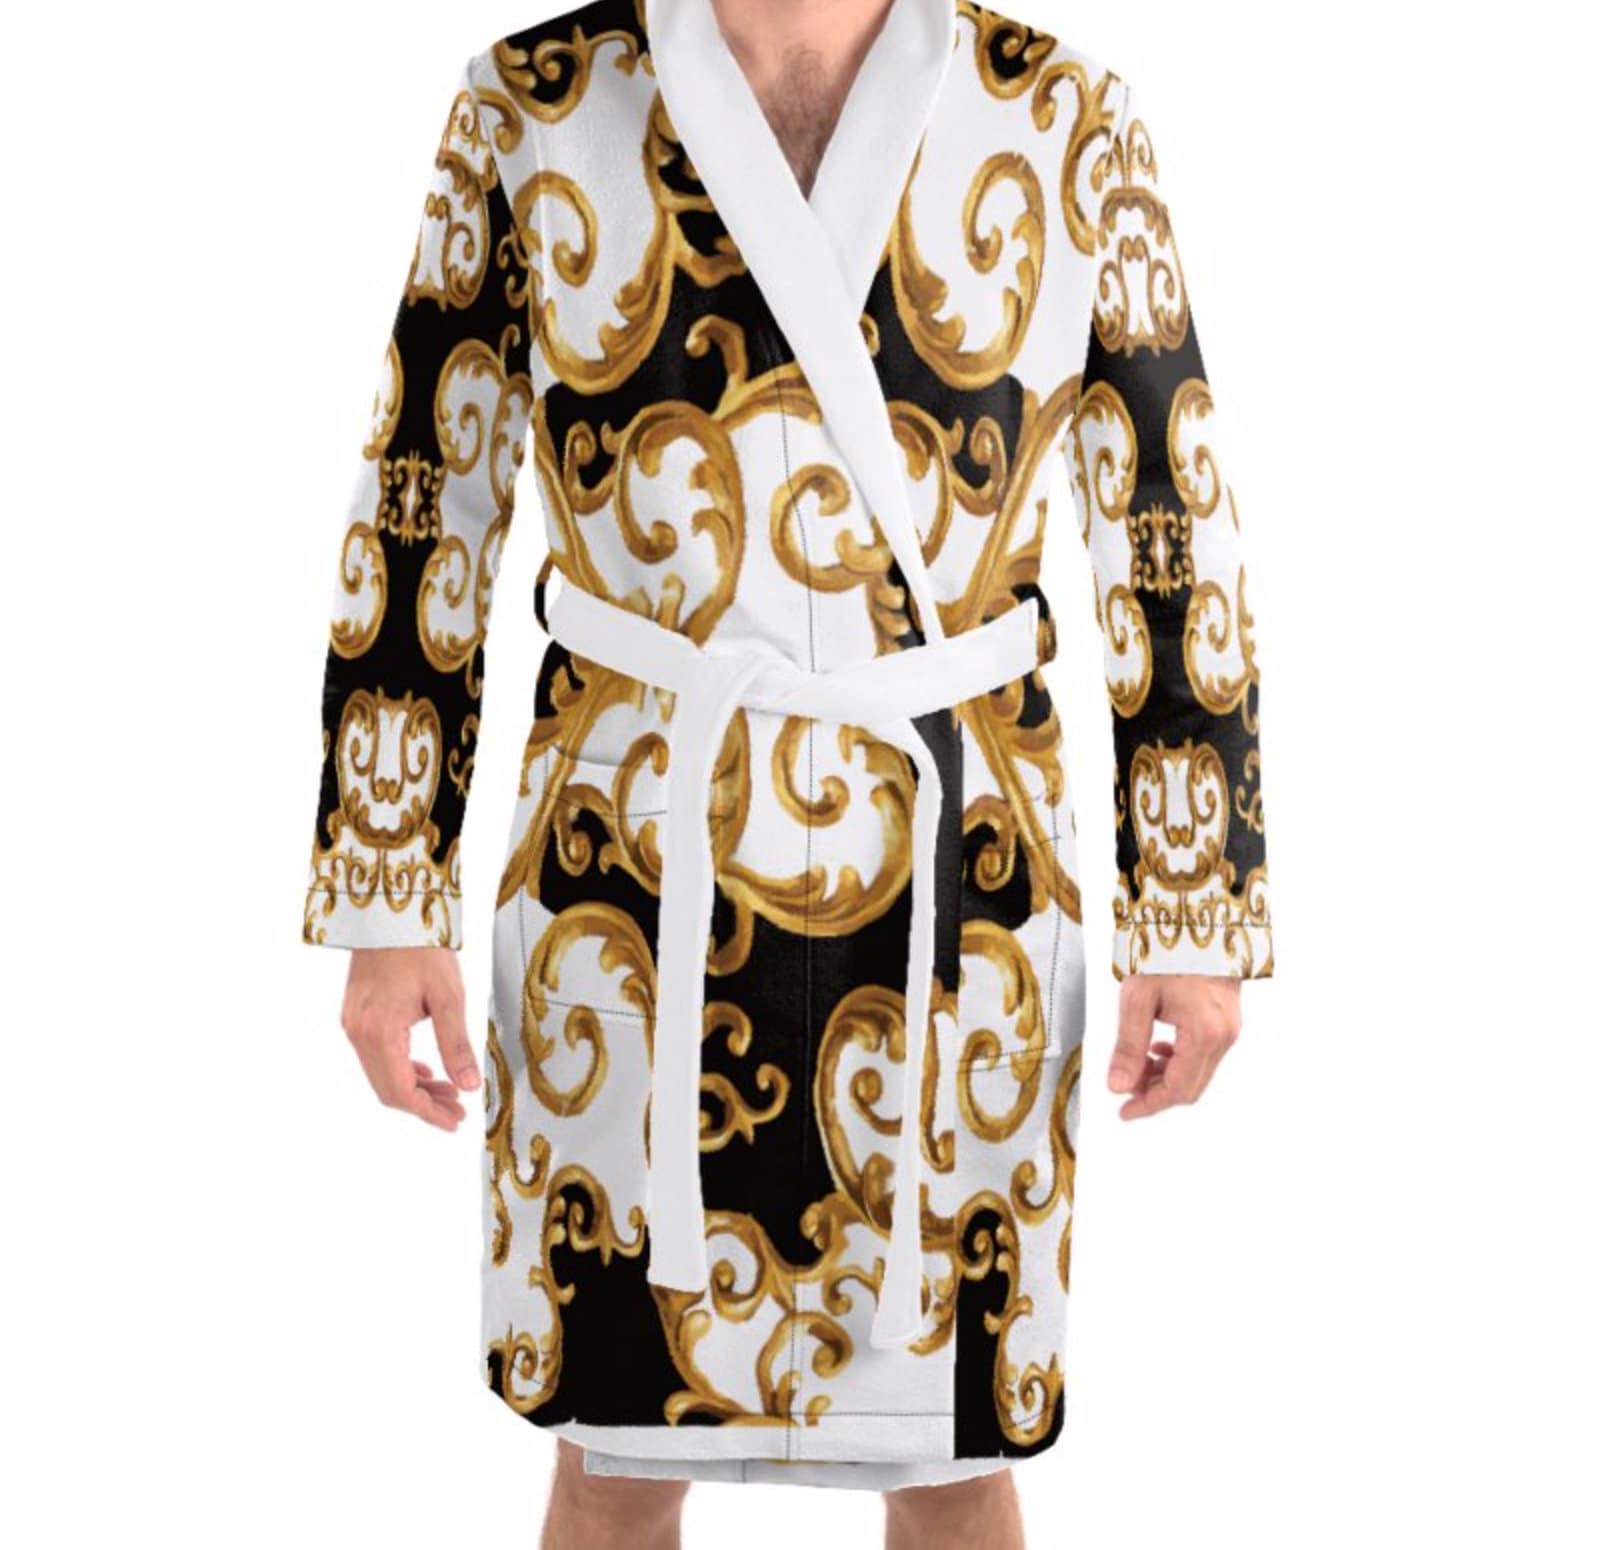 Louis Vuitton Belted Damier Robe - Grey Lounge & Sleepwear, Clothing -  LOU112720